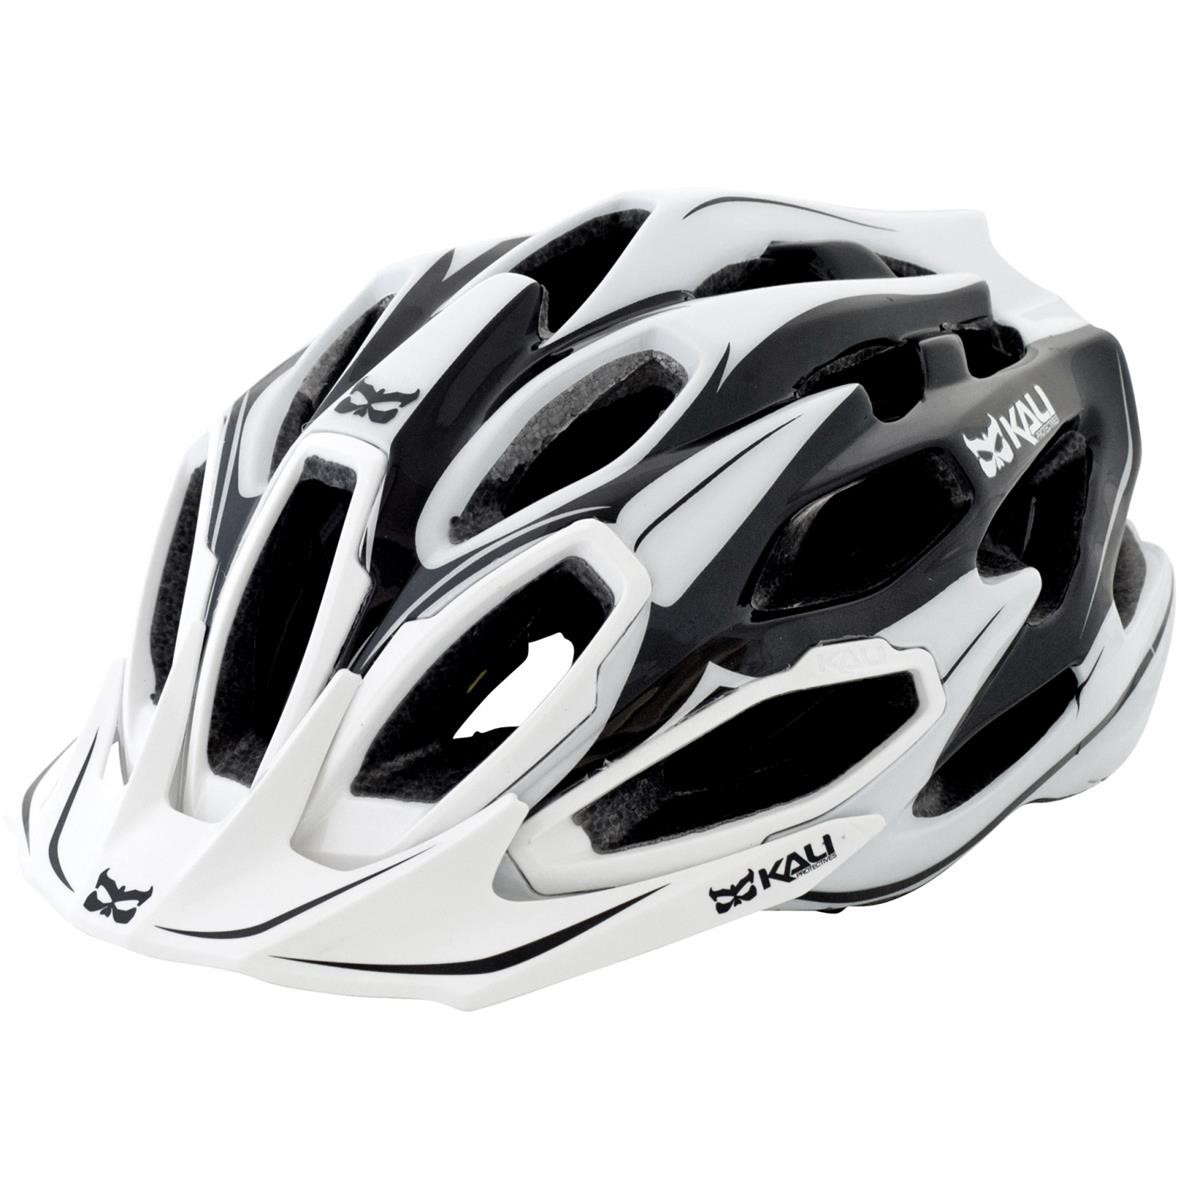 Kali Protectives Trail-MTB Helmet Maraka Zone - White